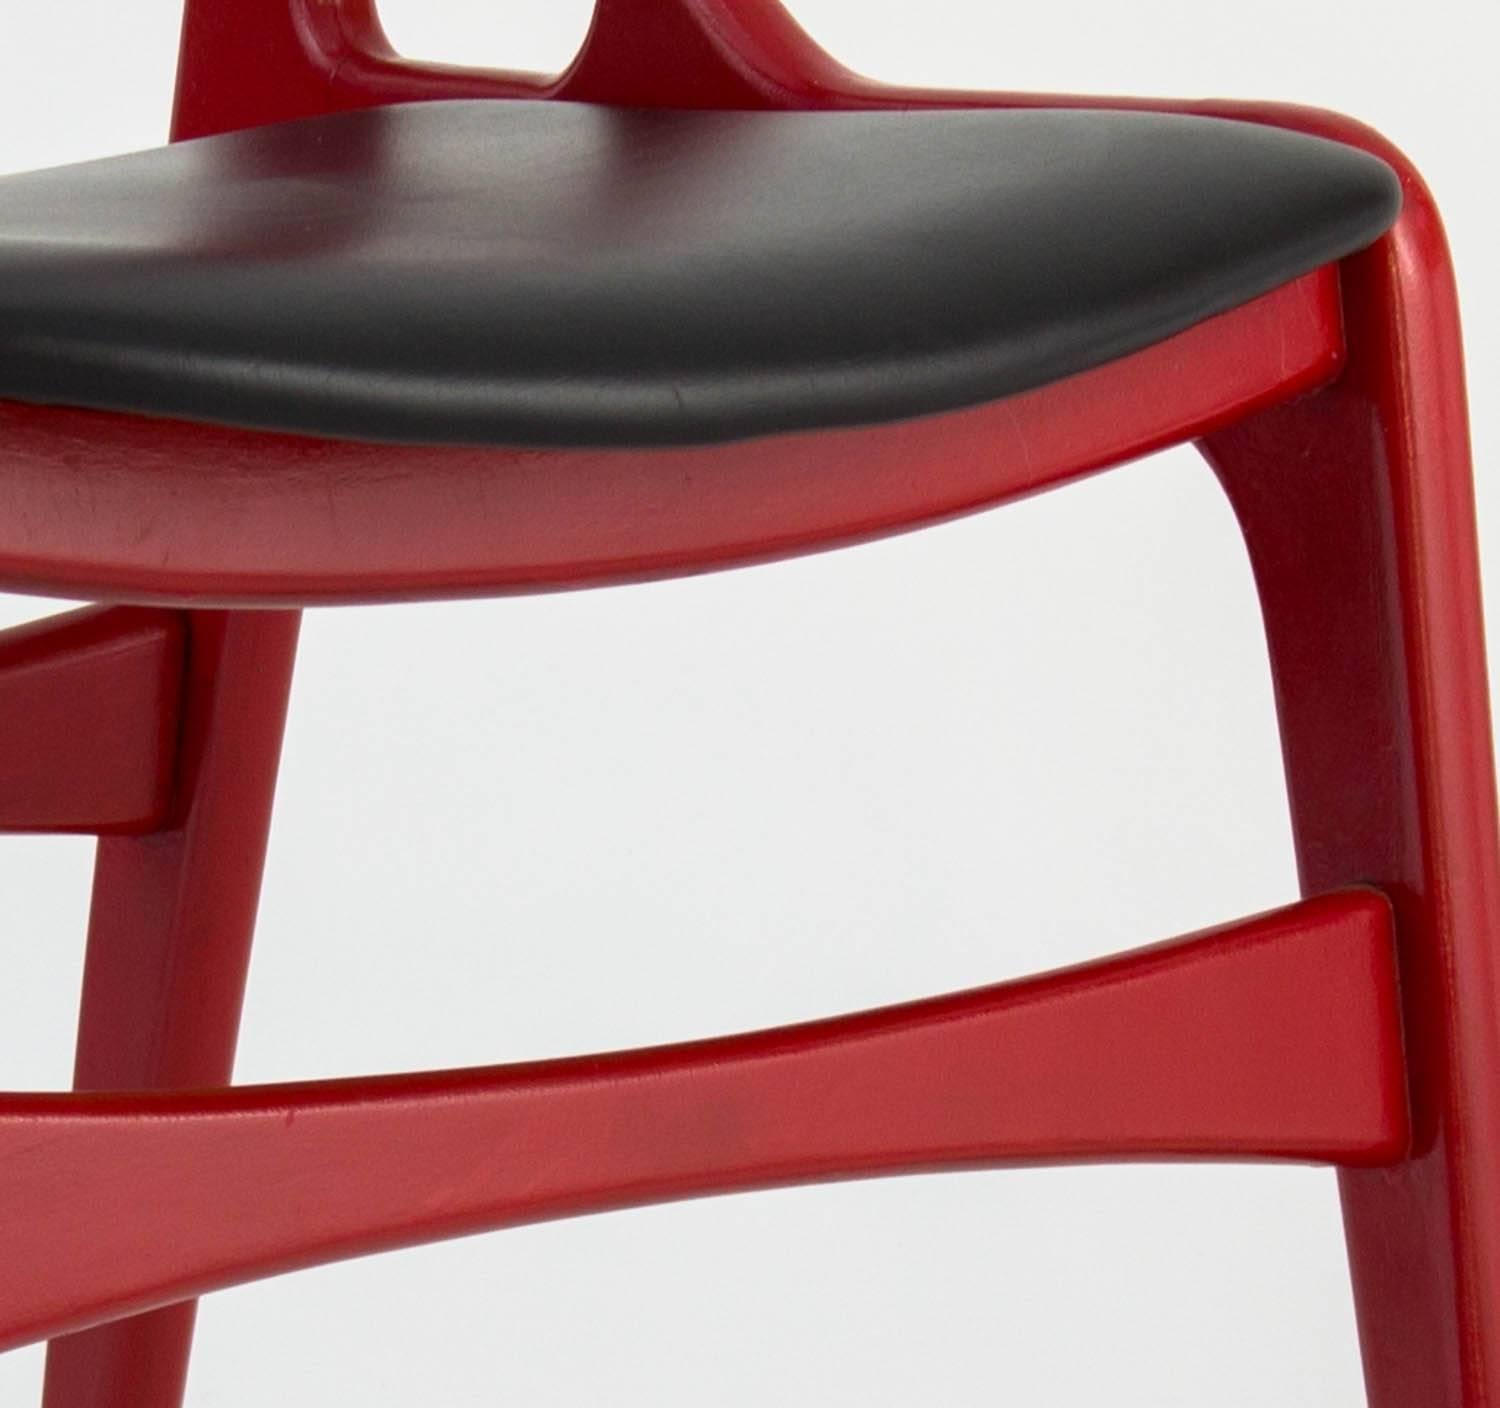 Satz von vier roten Stühlen aus dem 20. Jahrhundert mit schwarzer Vinylpolsterung. Diese scharfen roten Stühle in Originalfarbe und schwarzer Vinylpolsterung sind bequem und in gutem Zustand.